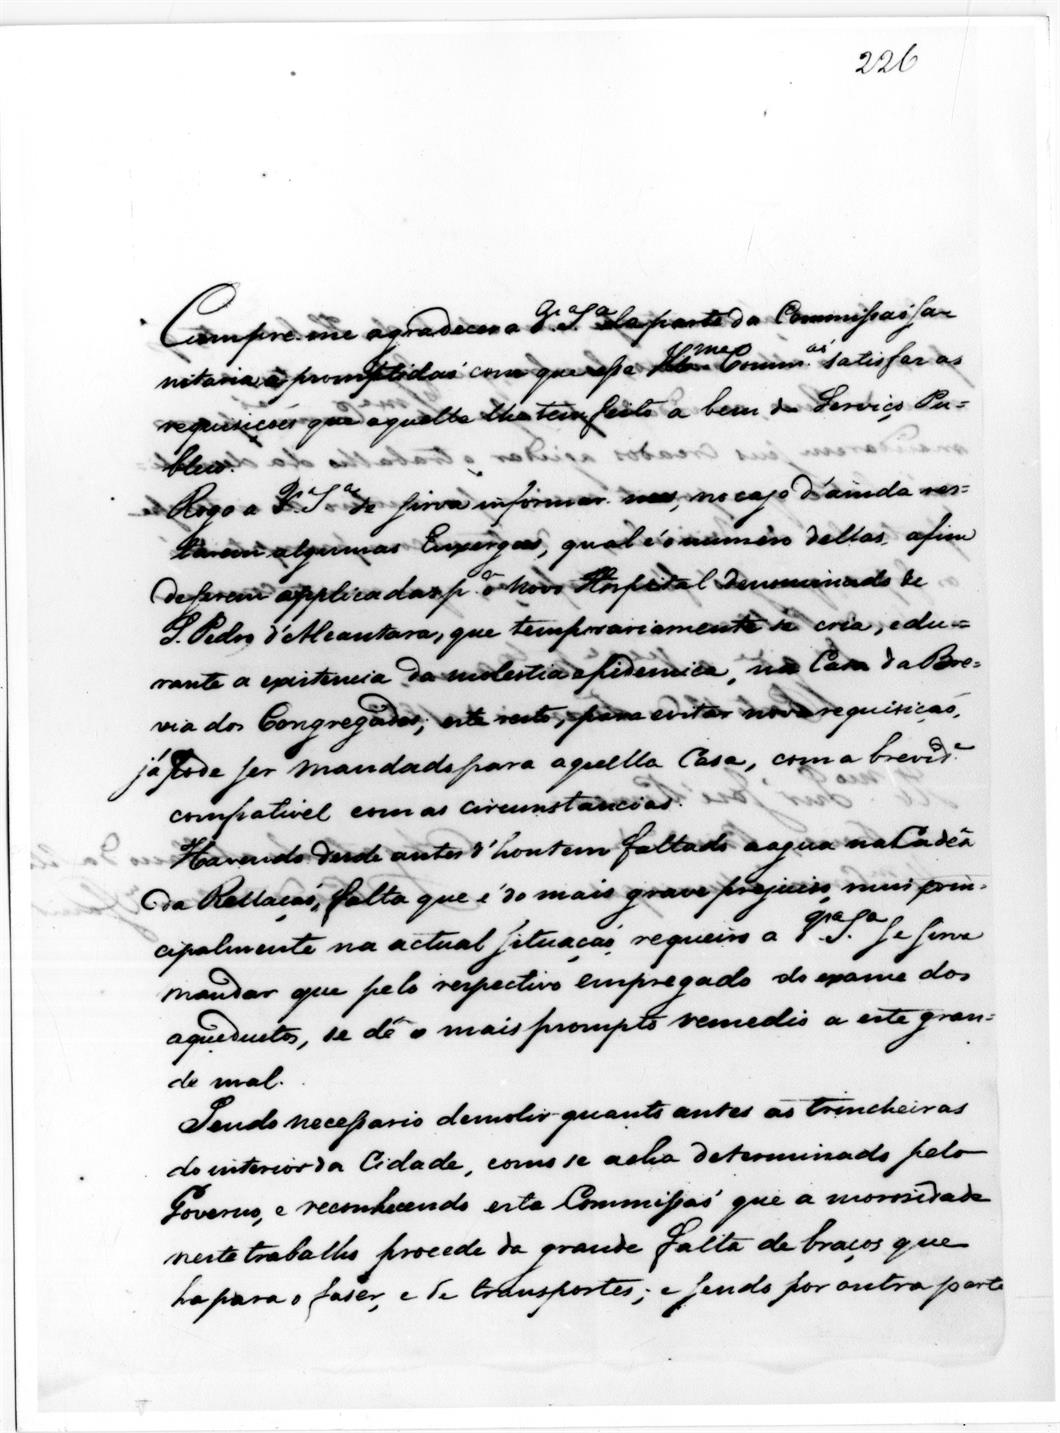 O cerco do Porto : exposição comemorativa do 150º aniversário : documento manuscrito do tempo do cerco